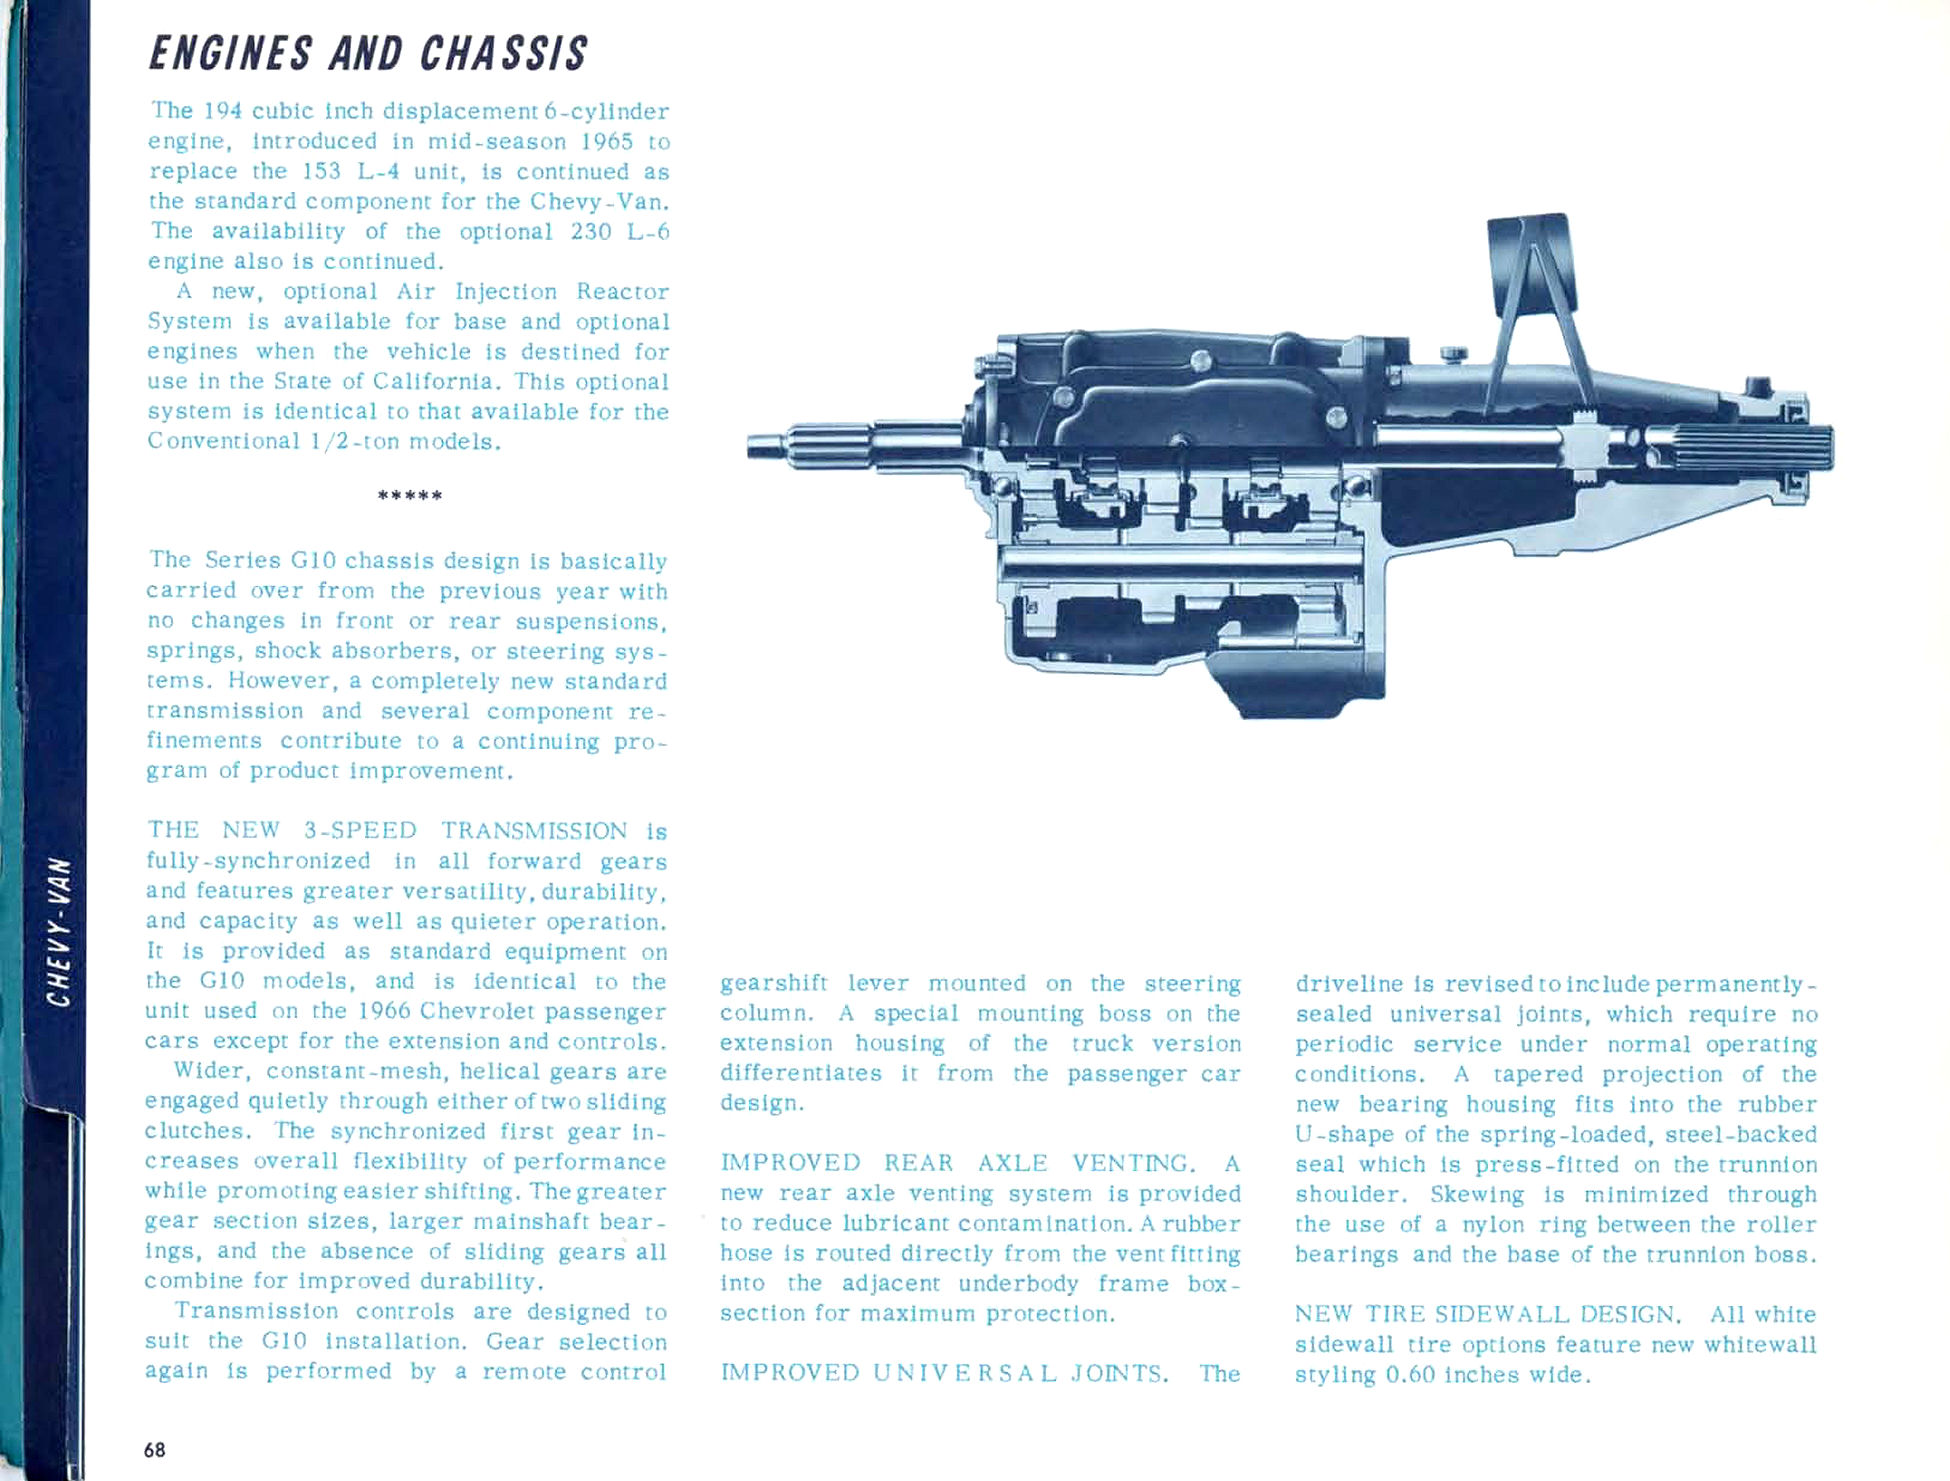 1966_Chevrolet_Trucks_Engineering_Features-65